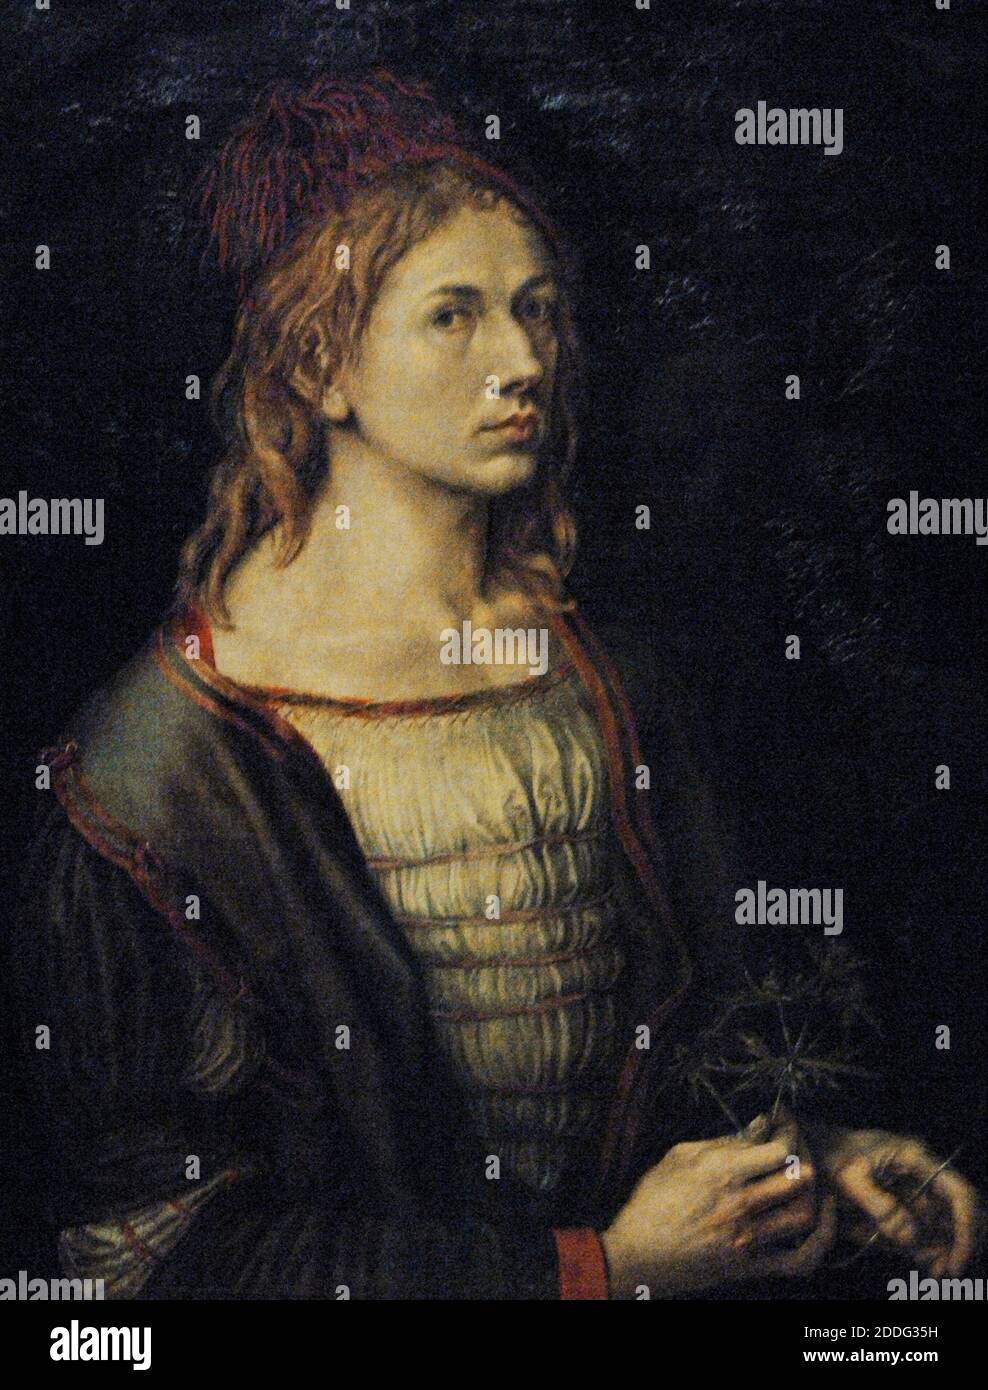 Albrecht Durer (1471-1528). Peintre et graveur de la Renaissance allemande. Portrait de l'artiste, 1493. Musée du Louvre. Paris. France. Banque D'Images